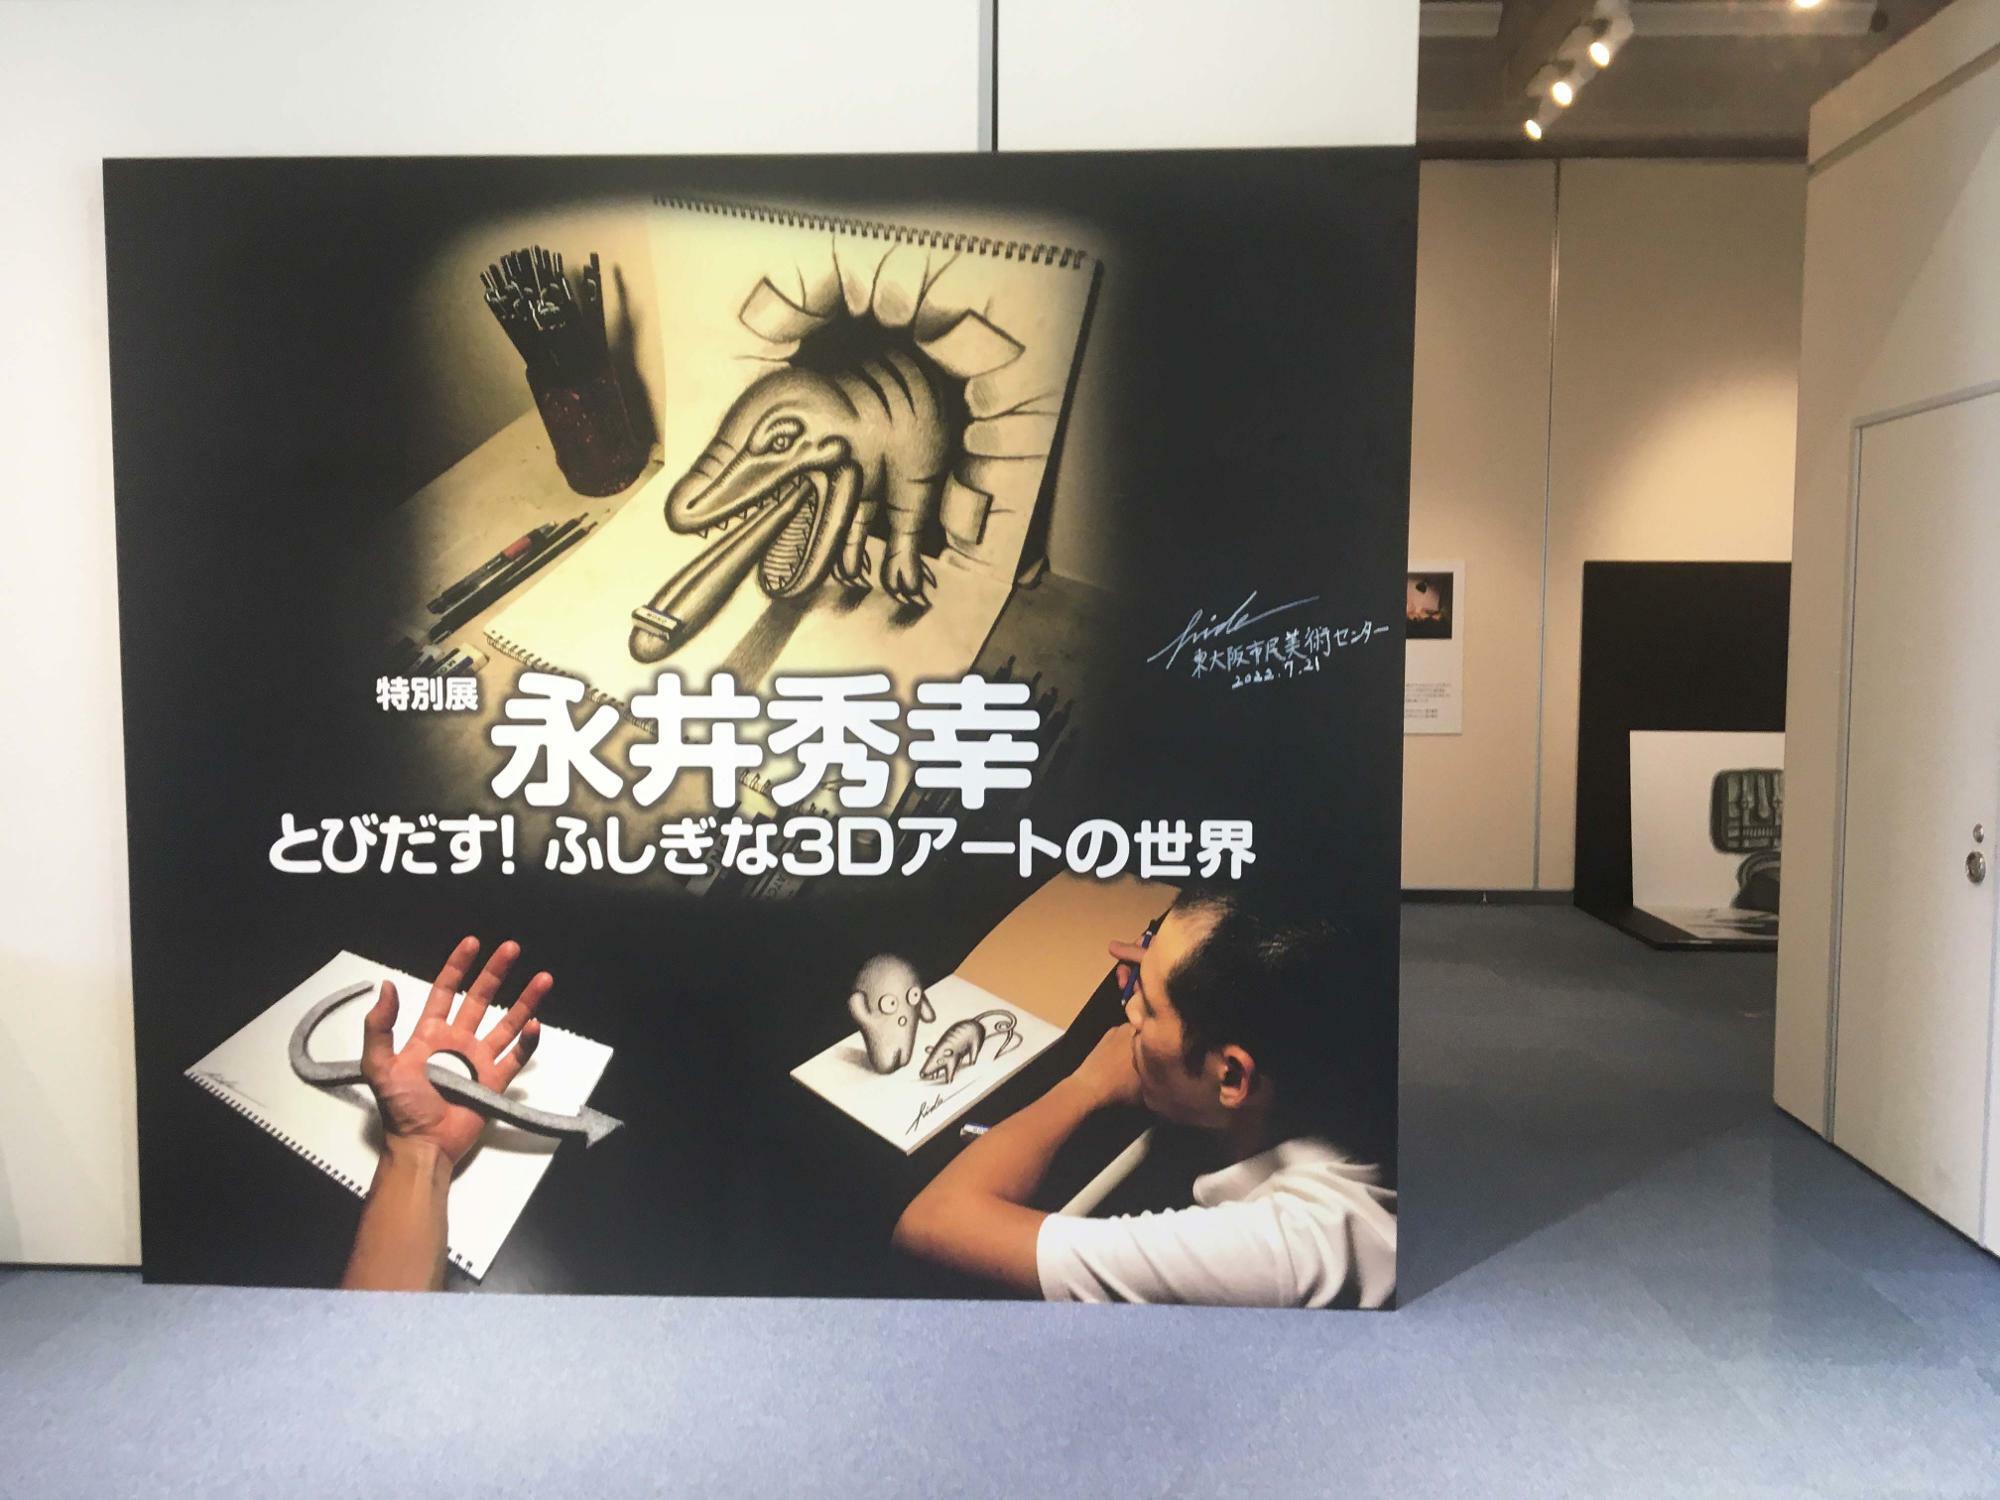 特別展「永井秀幸 とびだす!ふしぎな3Dアートの世界」